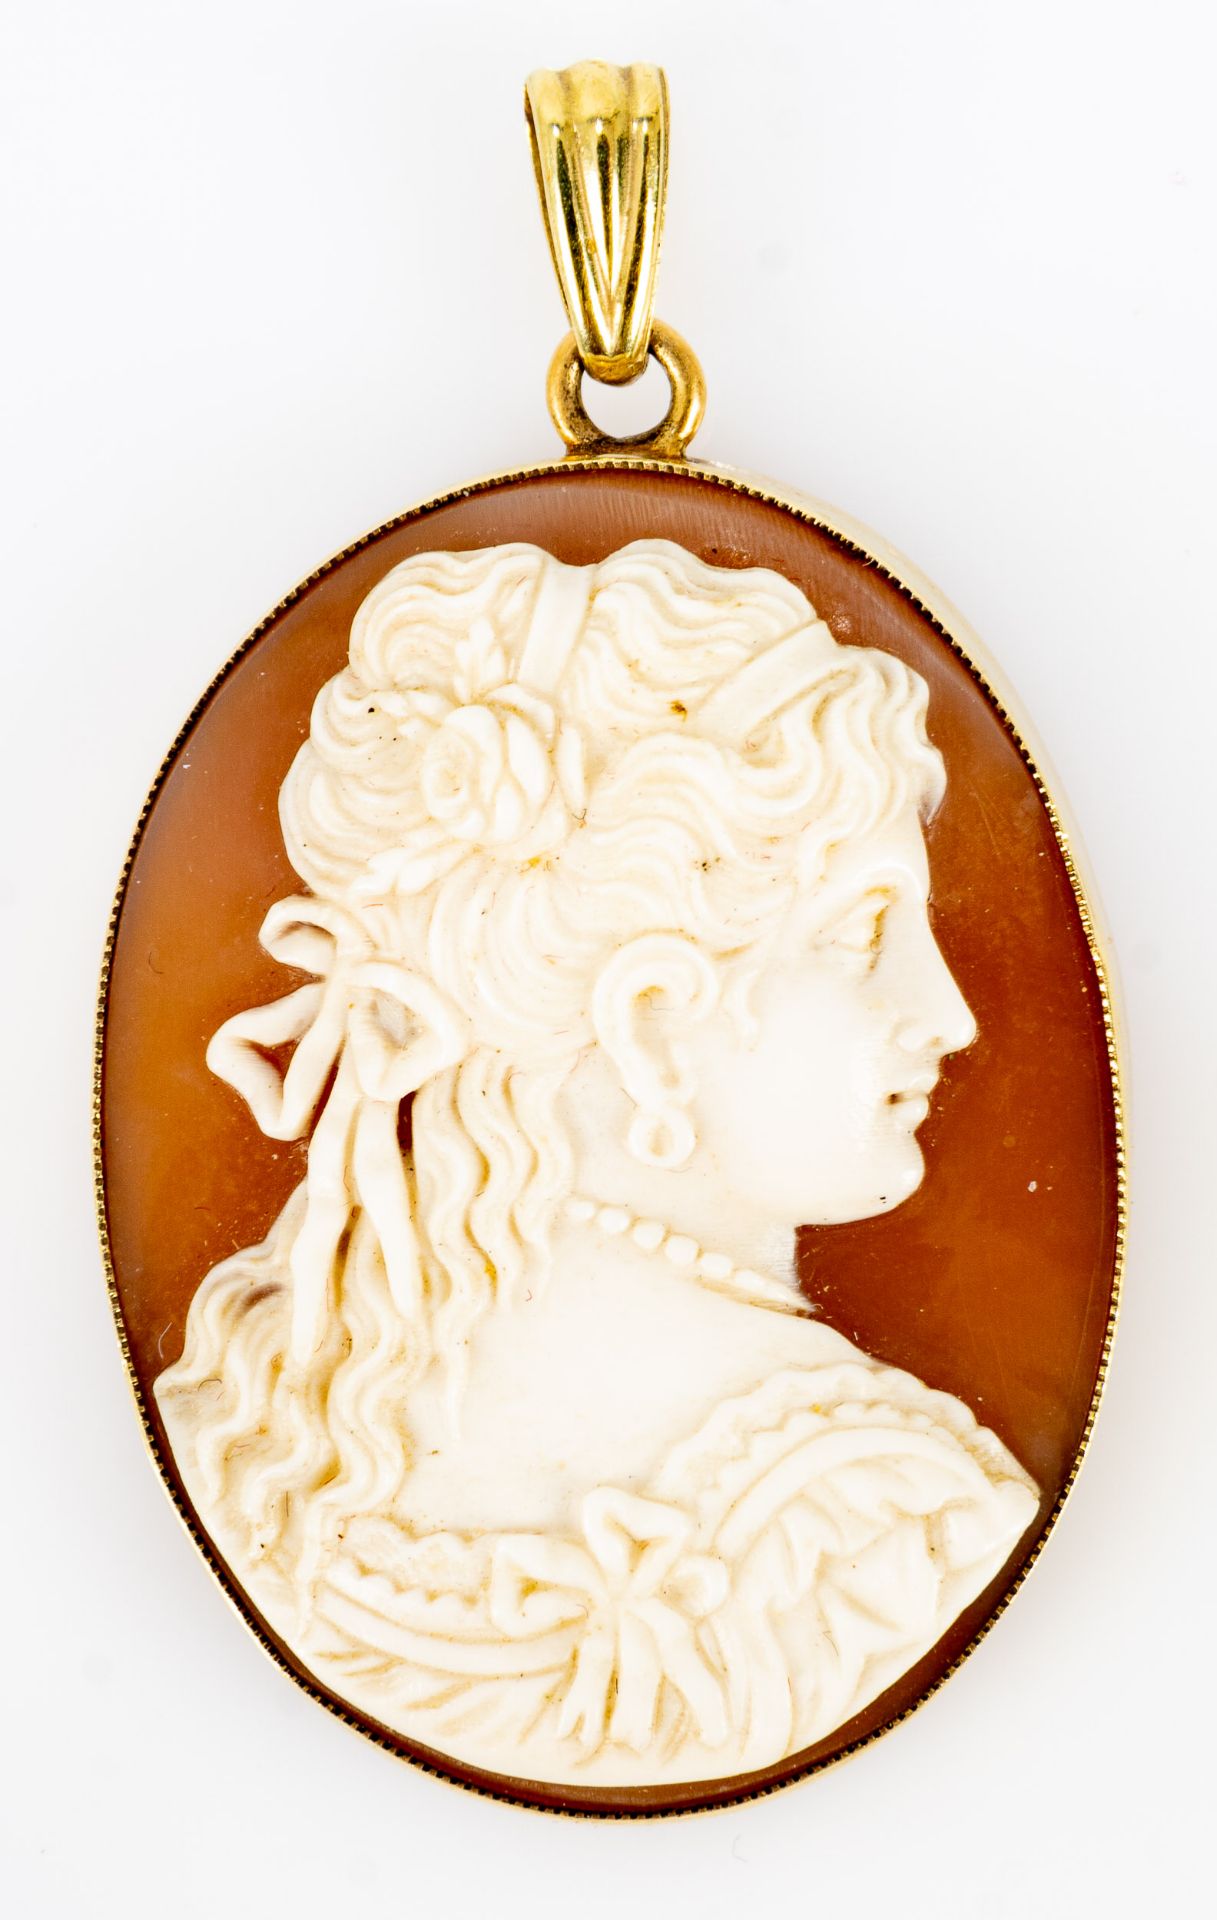 Fein geschnittene Gemme um 1900, detailreich ausgearbeiteter Kopf einer jungen Dame mit Perlenkette